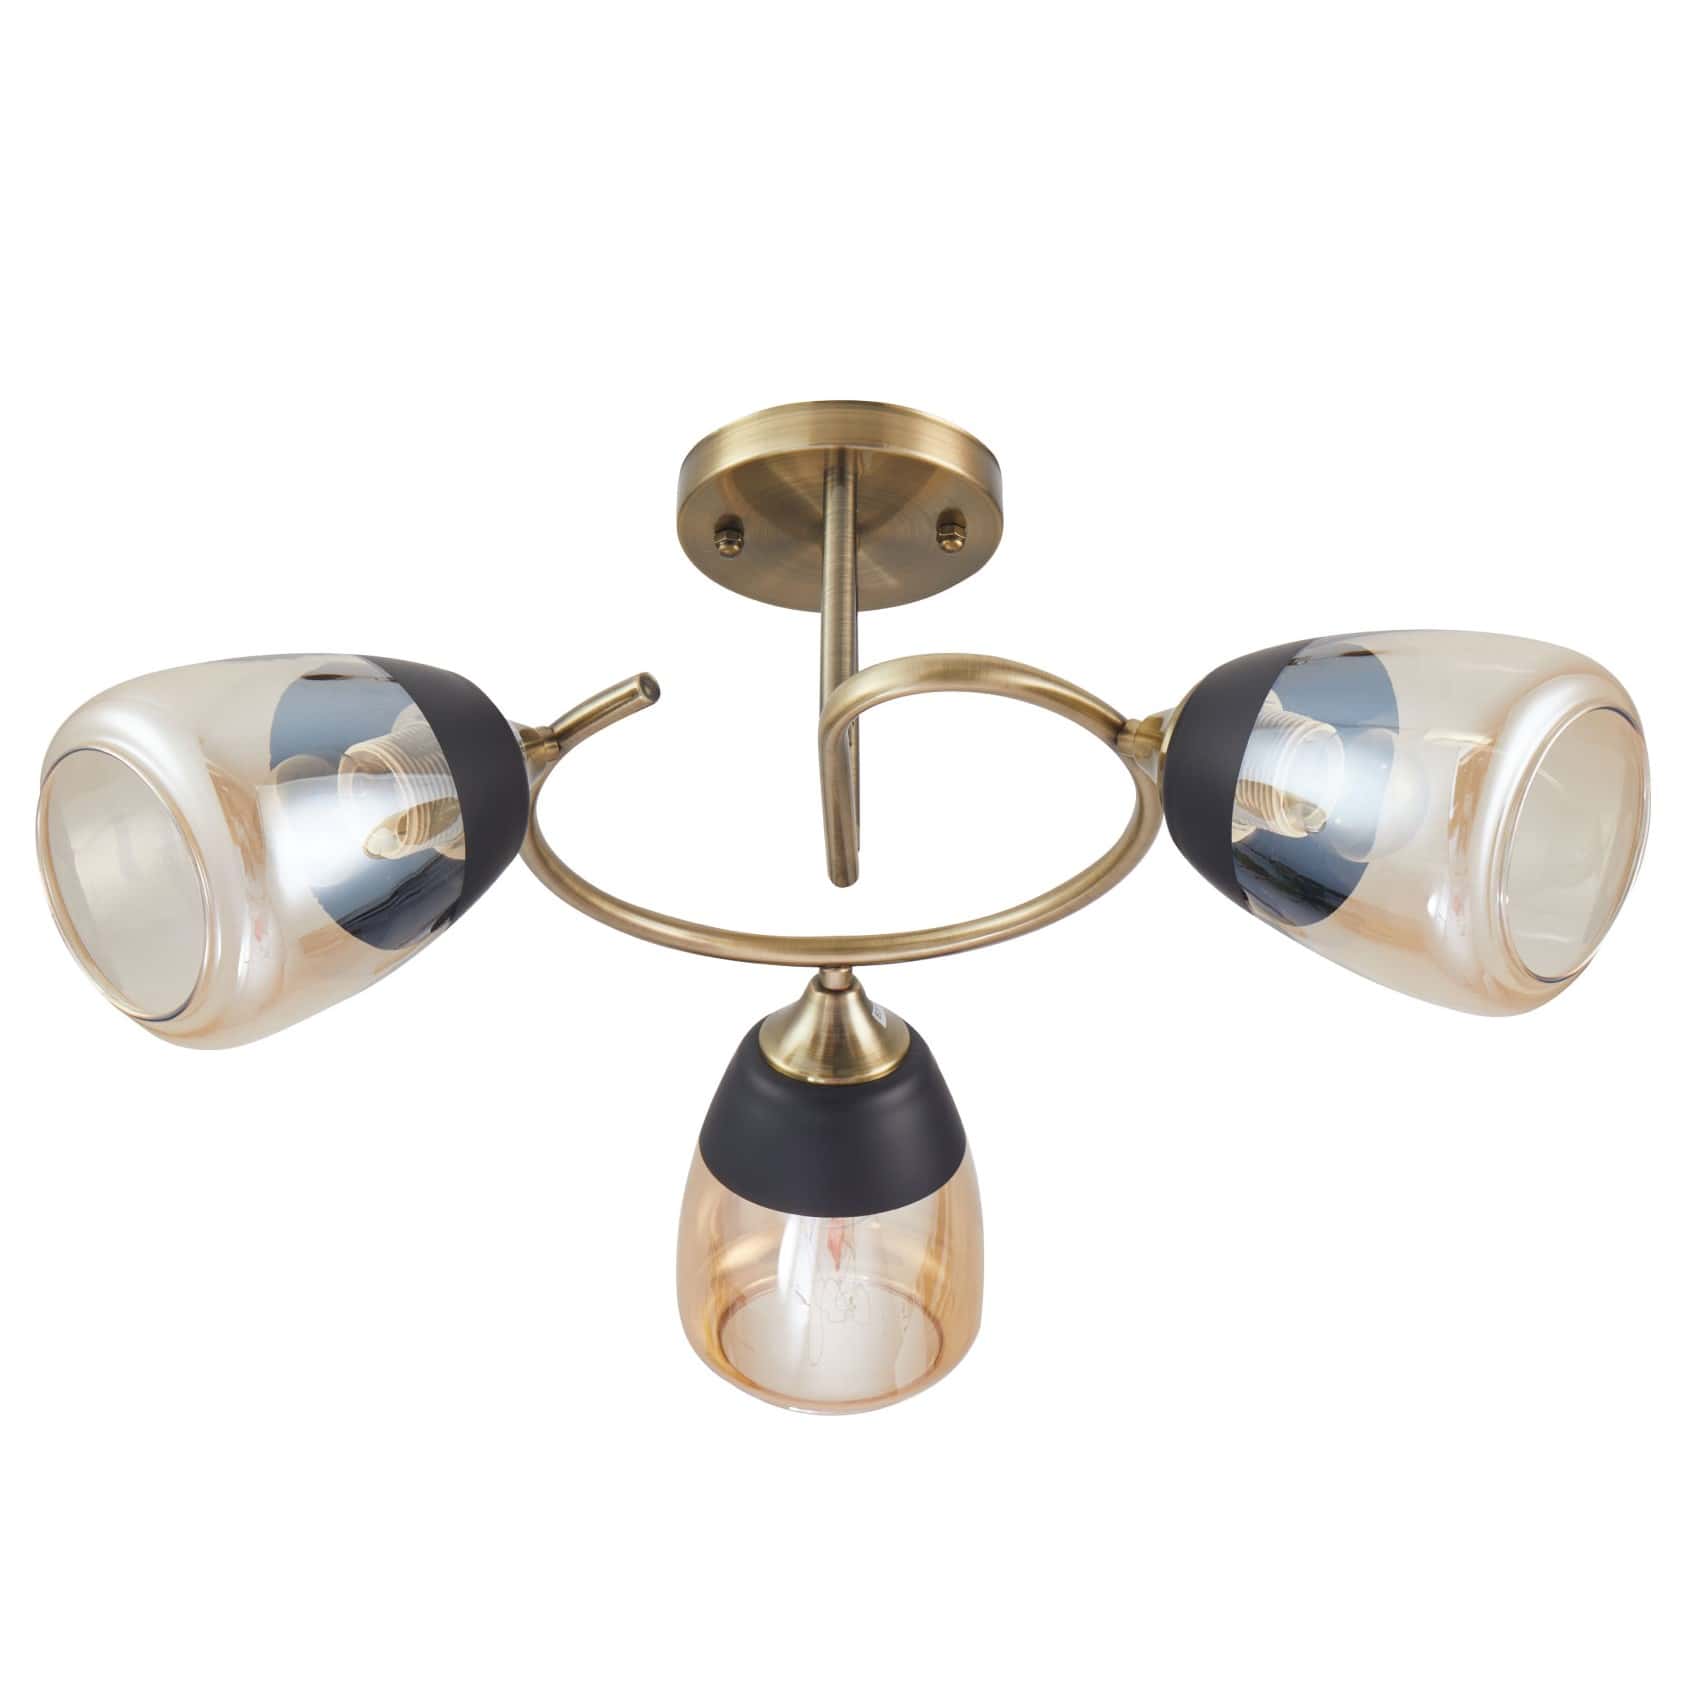 Main image of Amber Black Bell Glass Antique Brass Metal Spiral Semi Flush Ceiling Light 159-17158 | TEKLED 159-17158